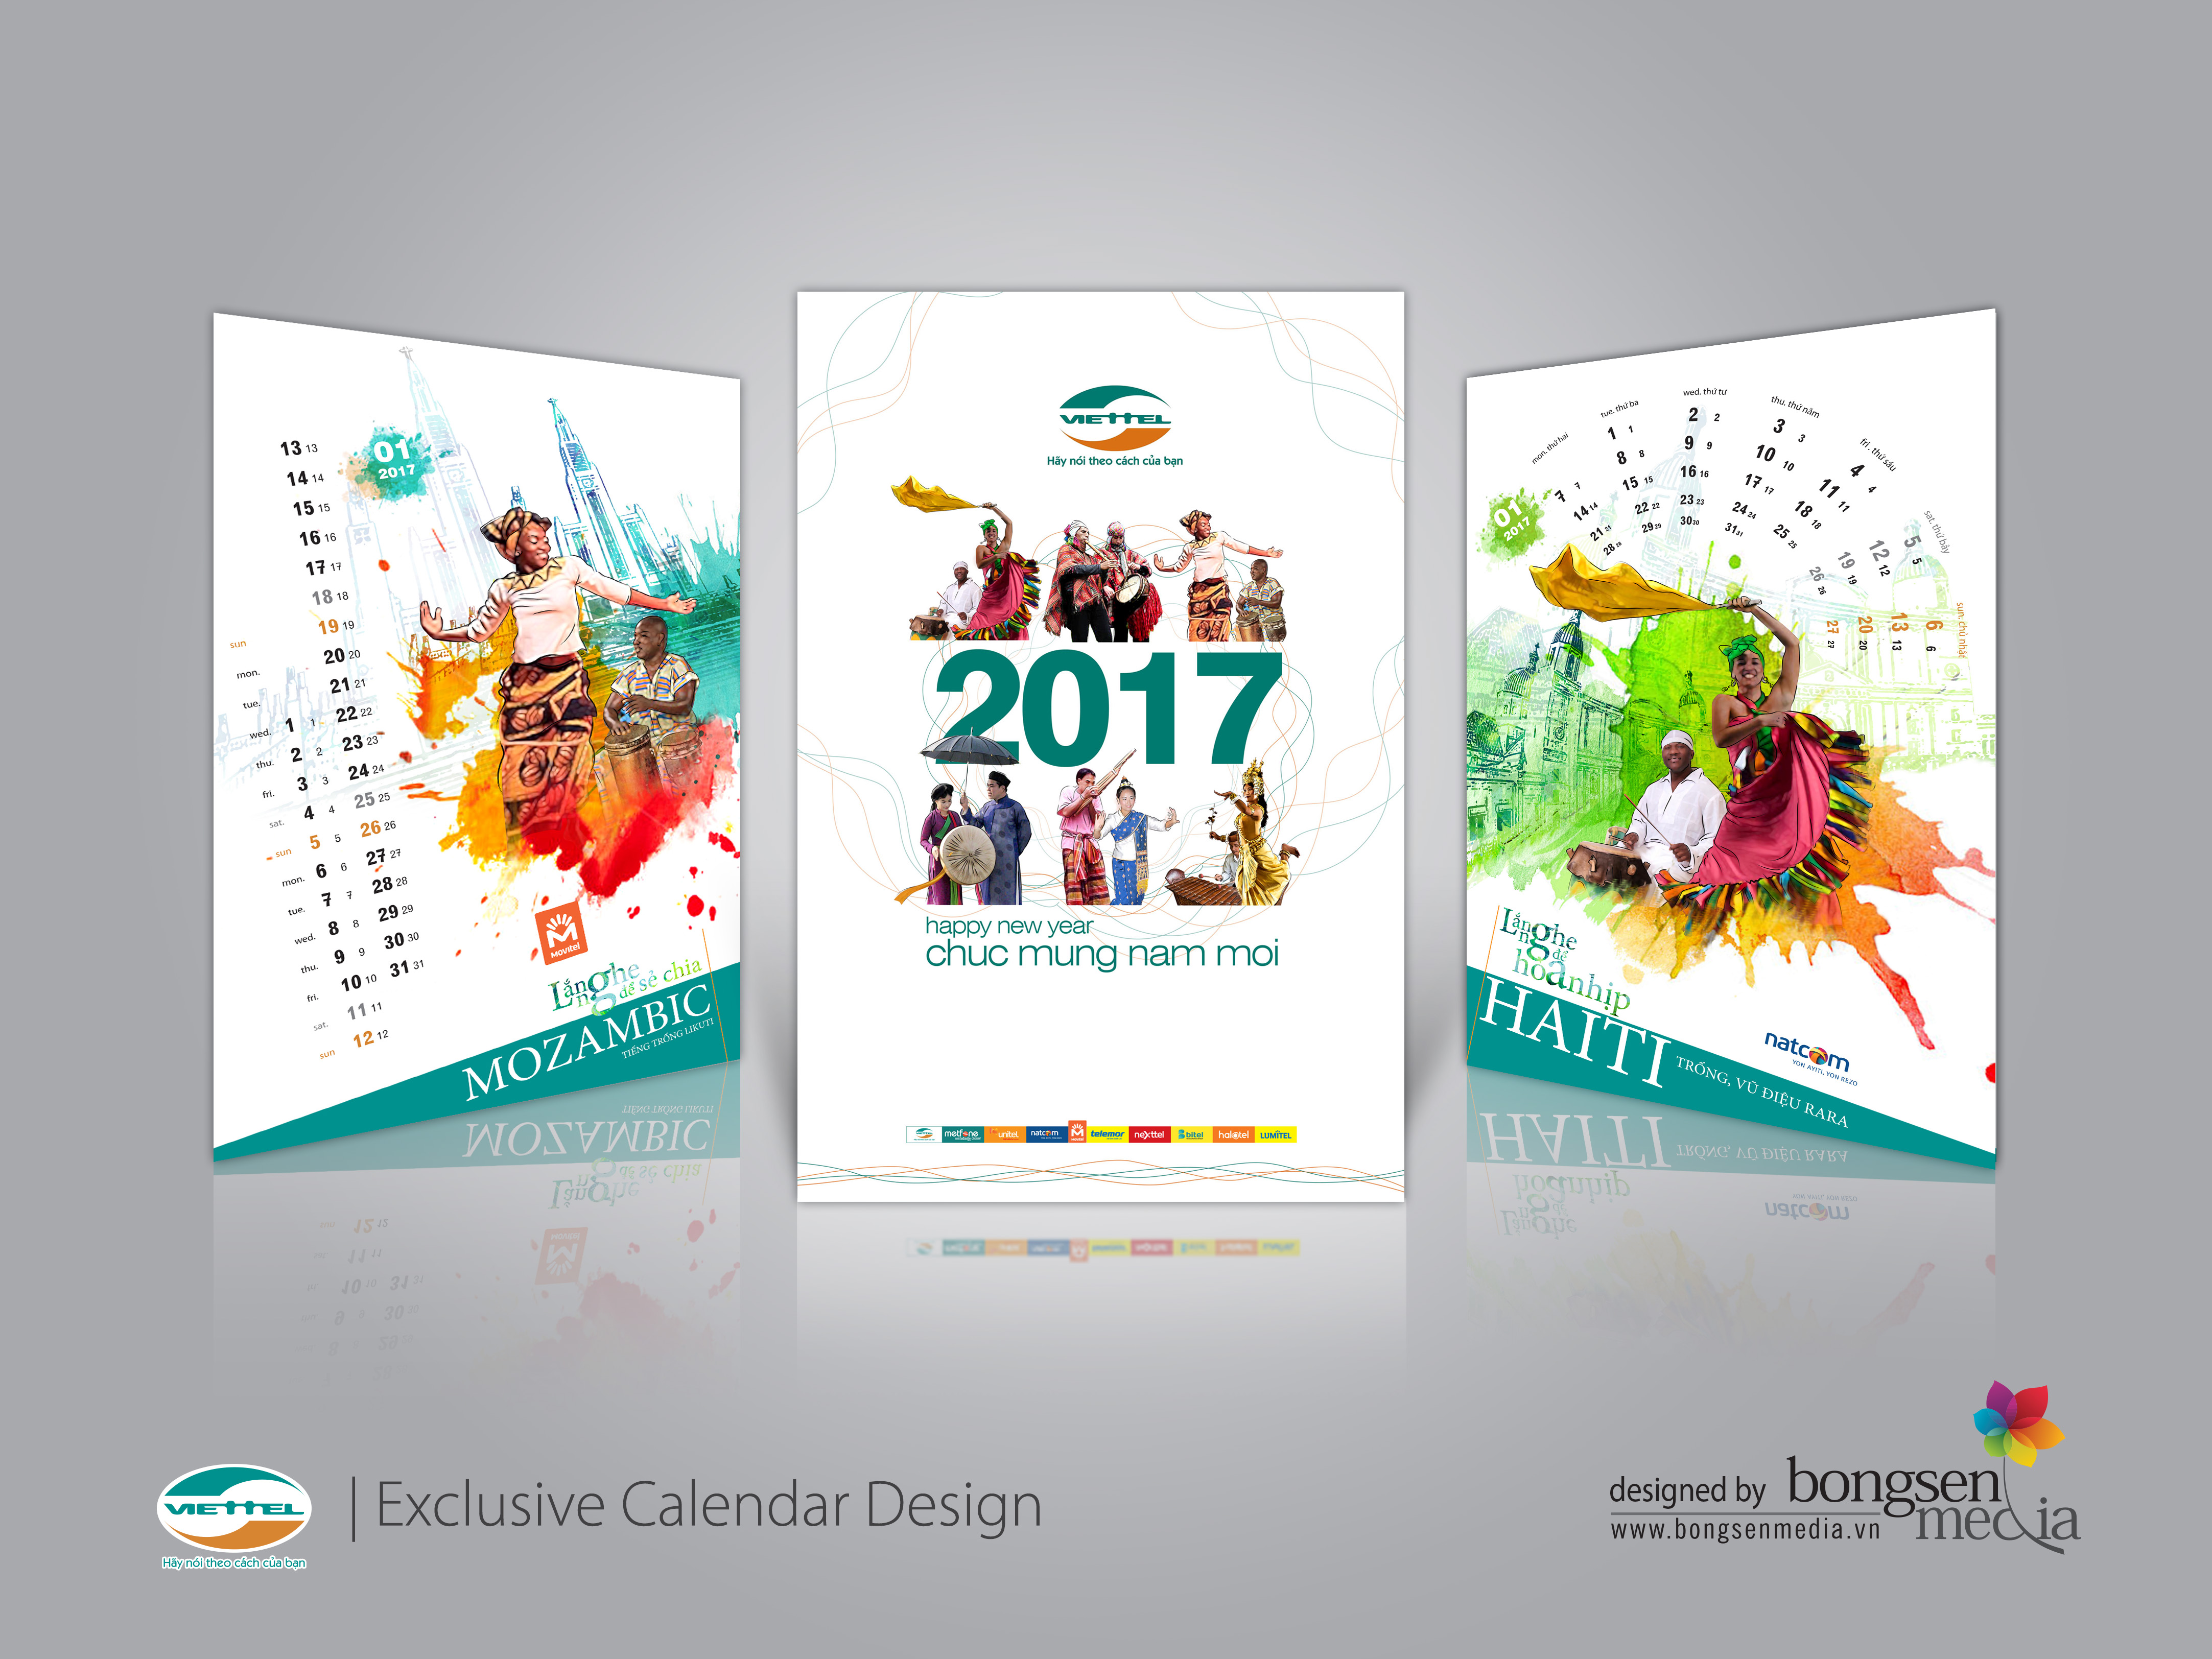 Thiết kế lịch độc quyền Viettel được thực hiện bởi BongSen Media